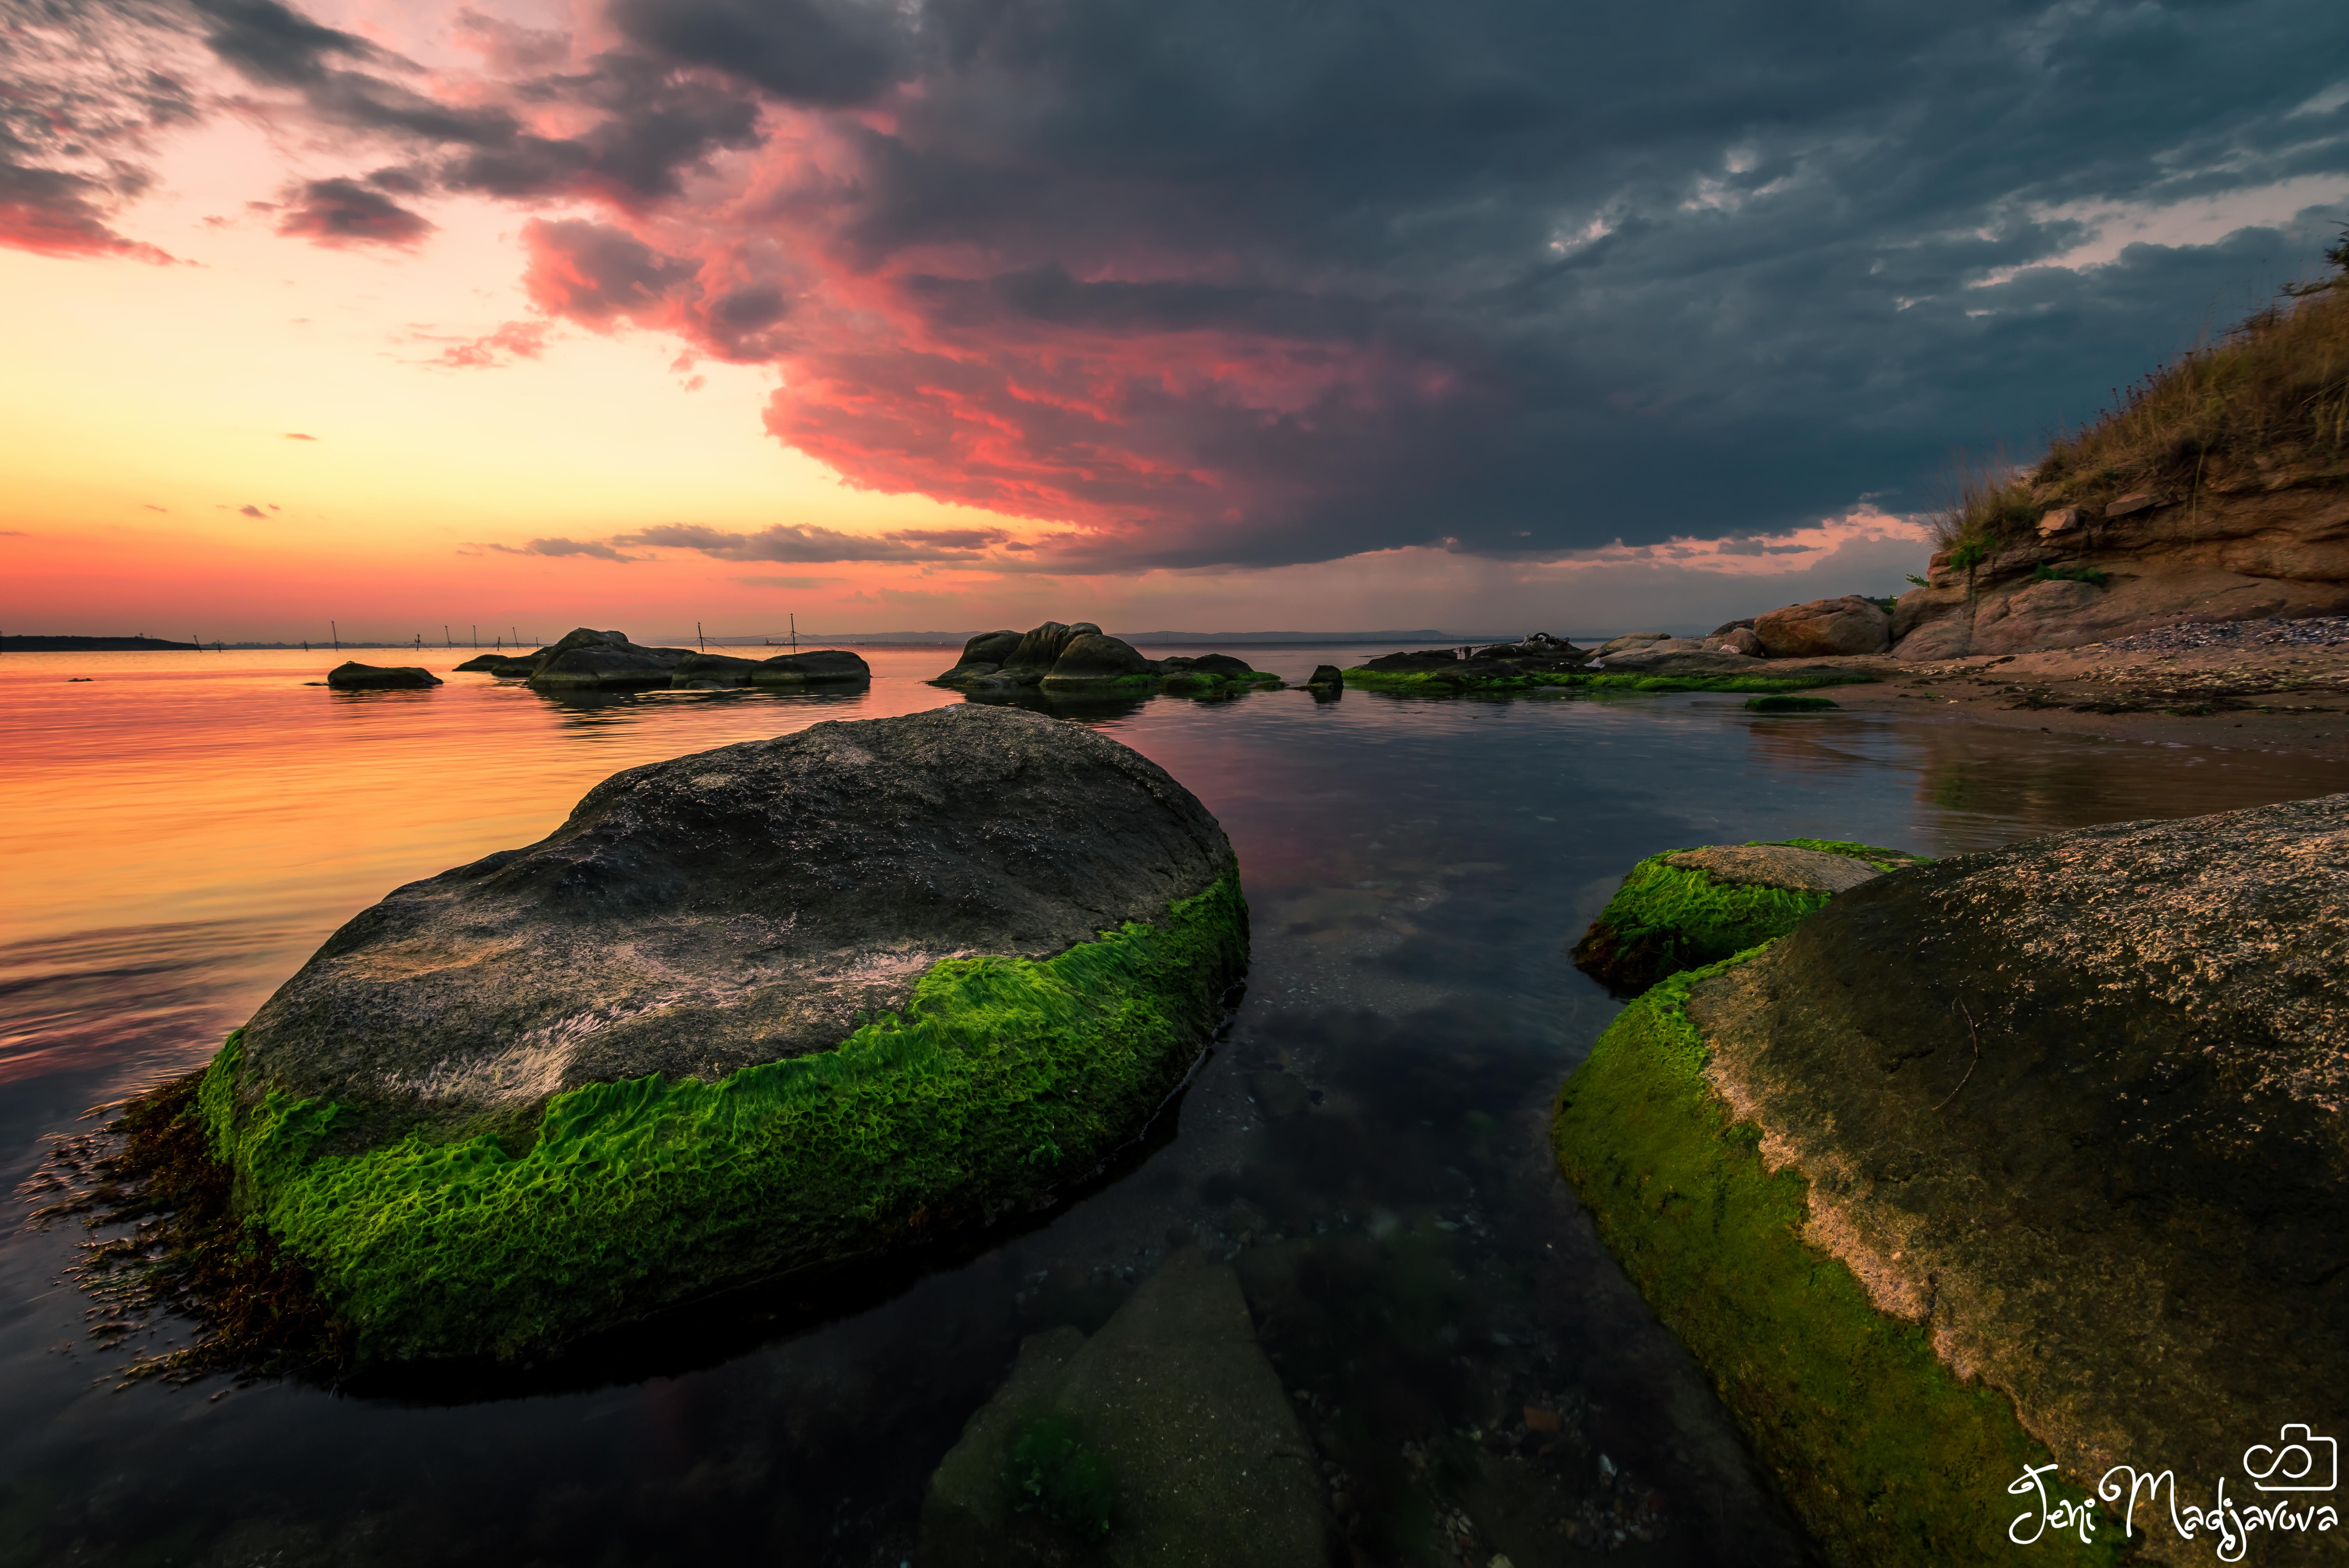 sunset, nature, landscape, sea, rock, sky, clouds, Jeni Madjarova